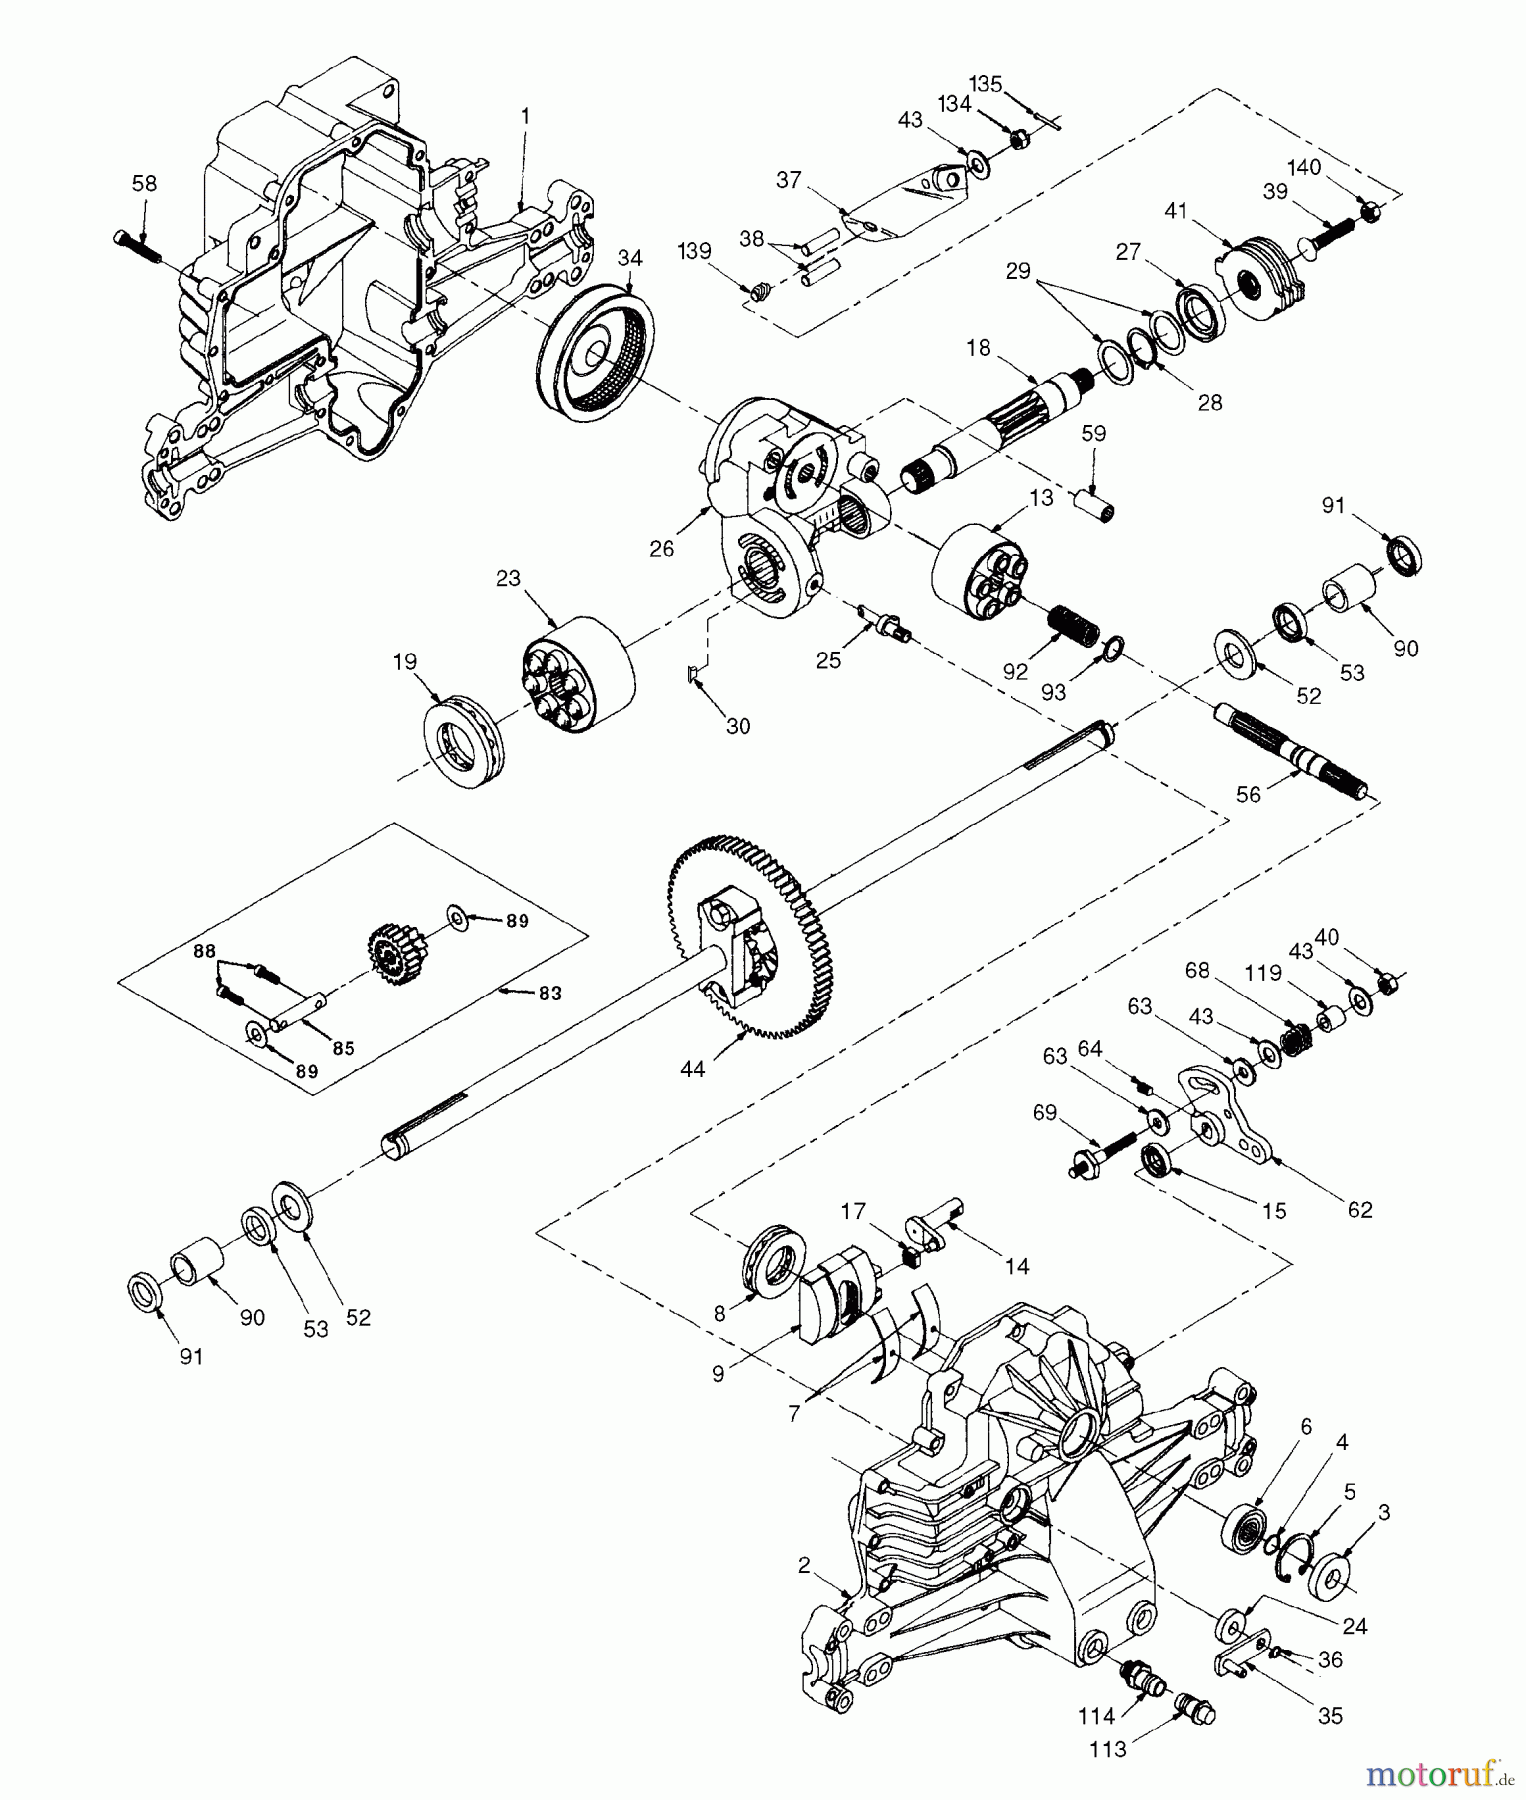  Husqvarna Rasen und Garten Traktoren YTH 180 (954140010) (HCYTH180E) - Husqvarna Yard Tractor (1997-11 & After) Hydro Gear Transaxle